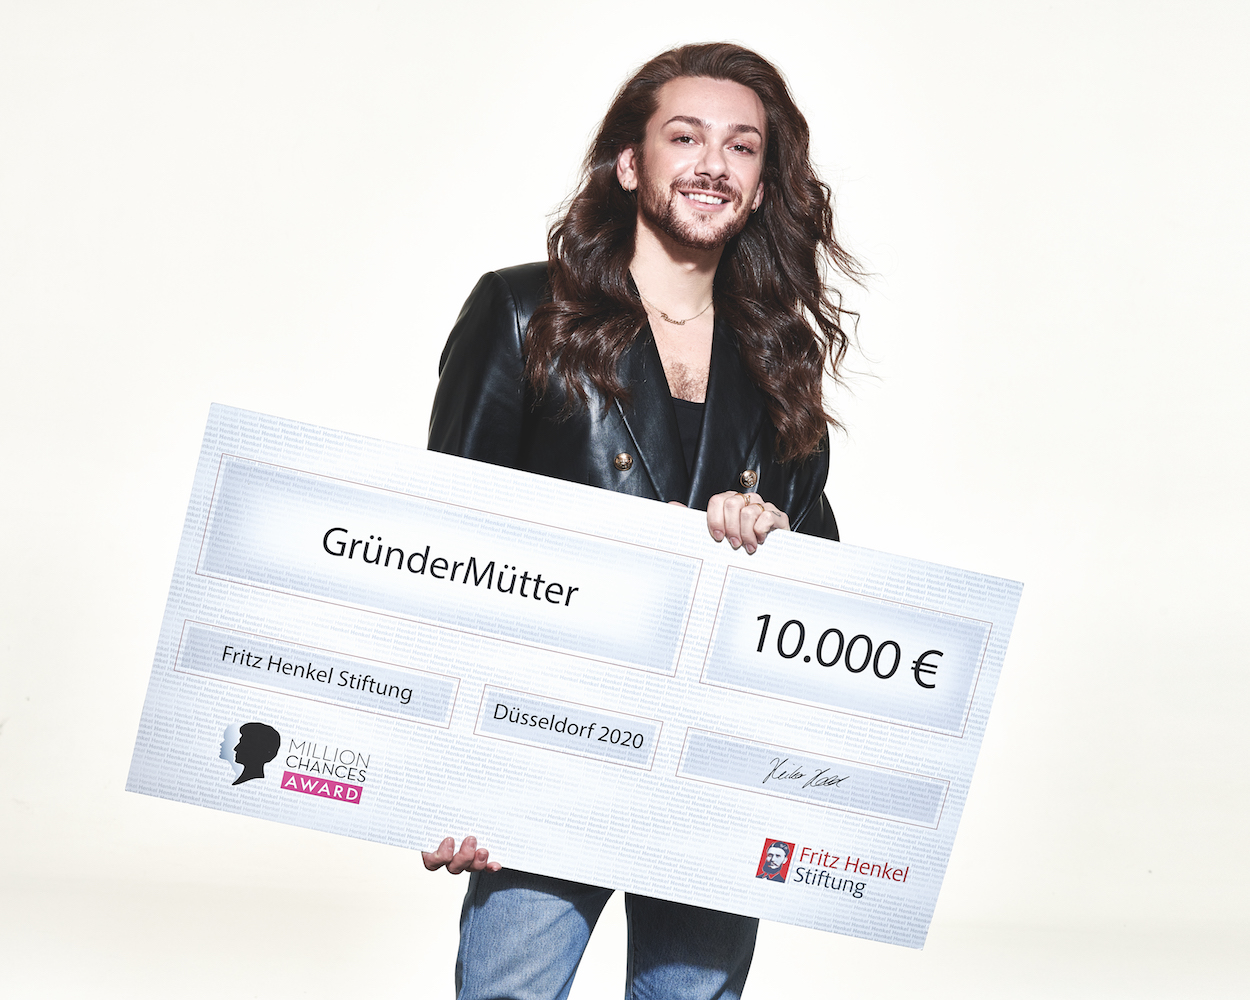 GründerMütter gewinnt Million Chances Award von Schwarzkopf